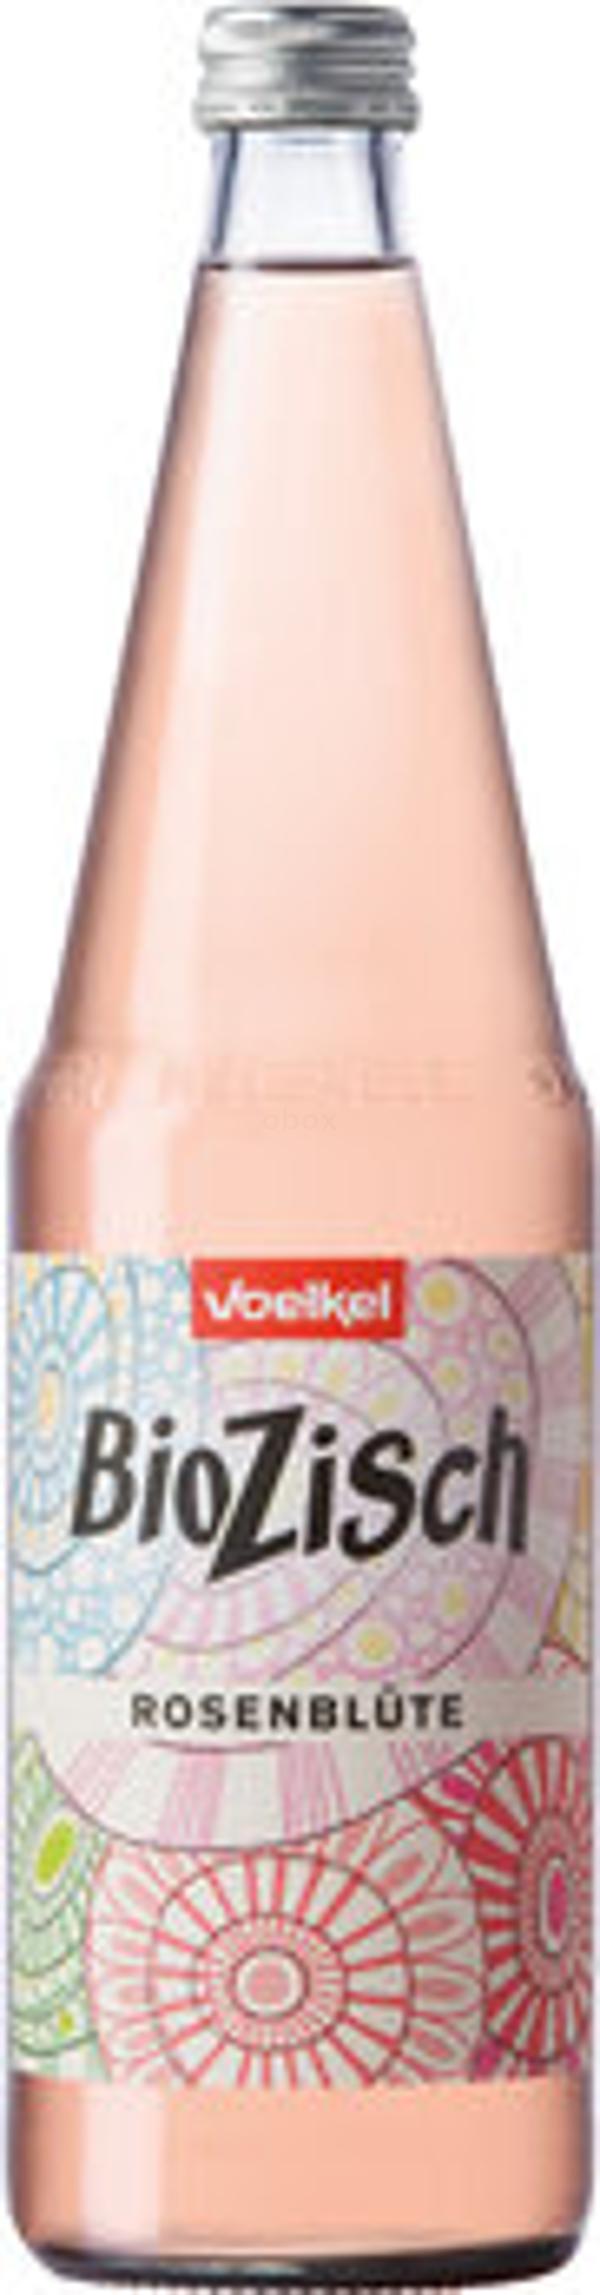 Produktfoto zu BioZisch Rosenblüte 0,7